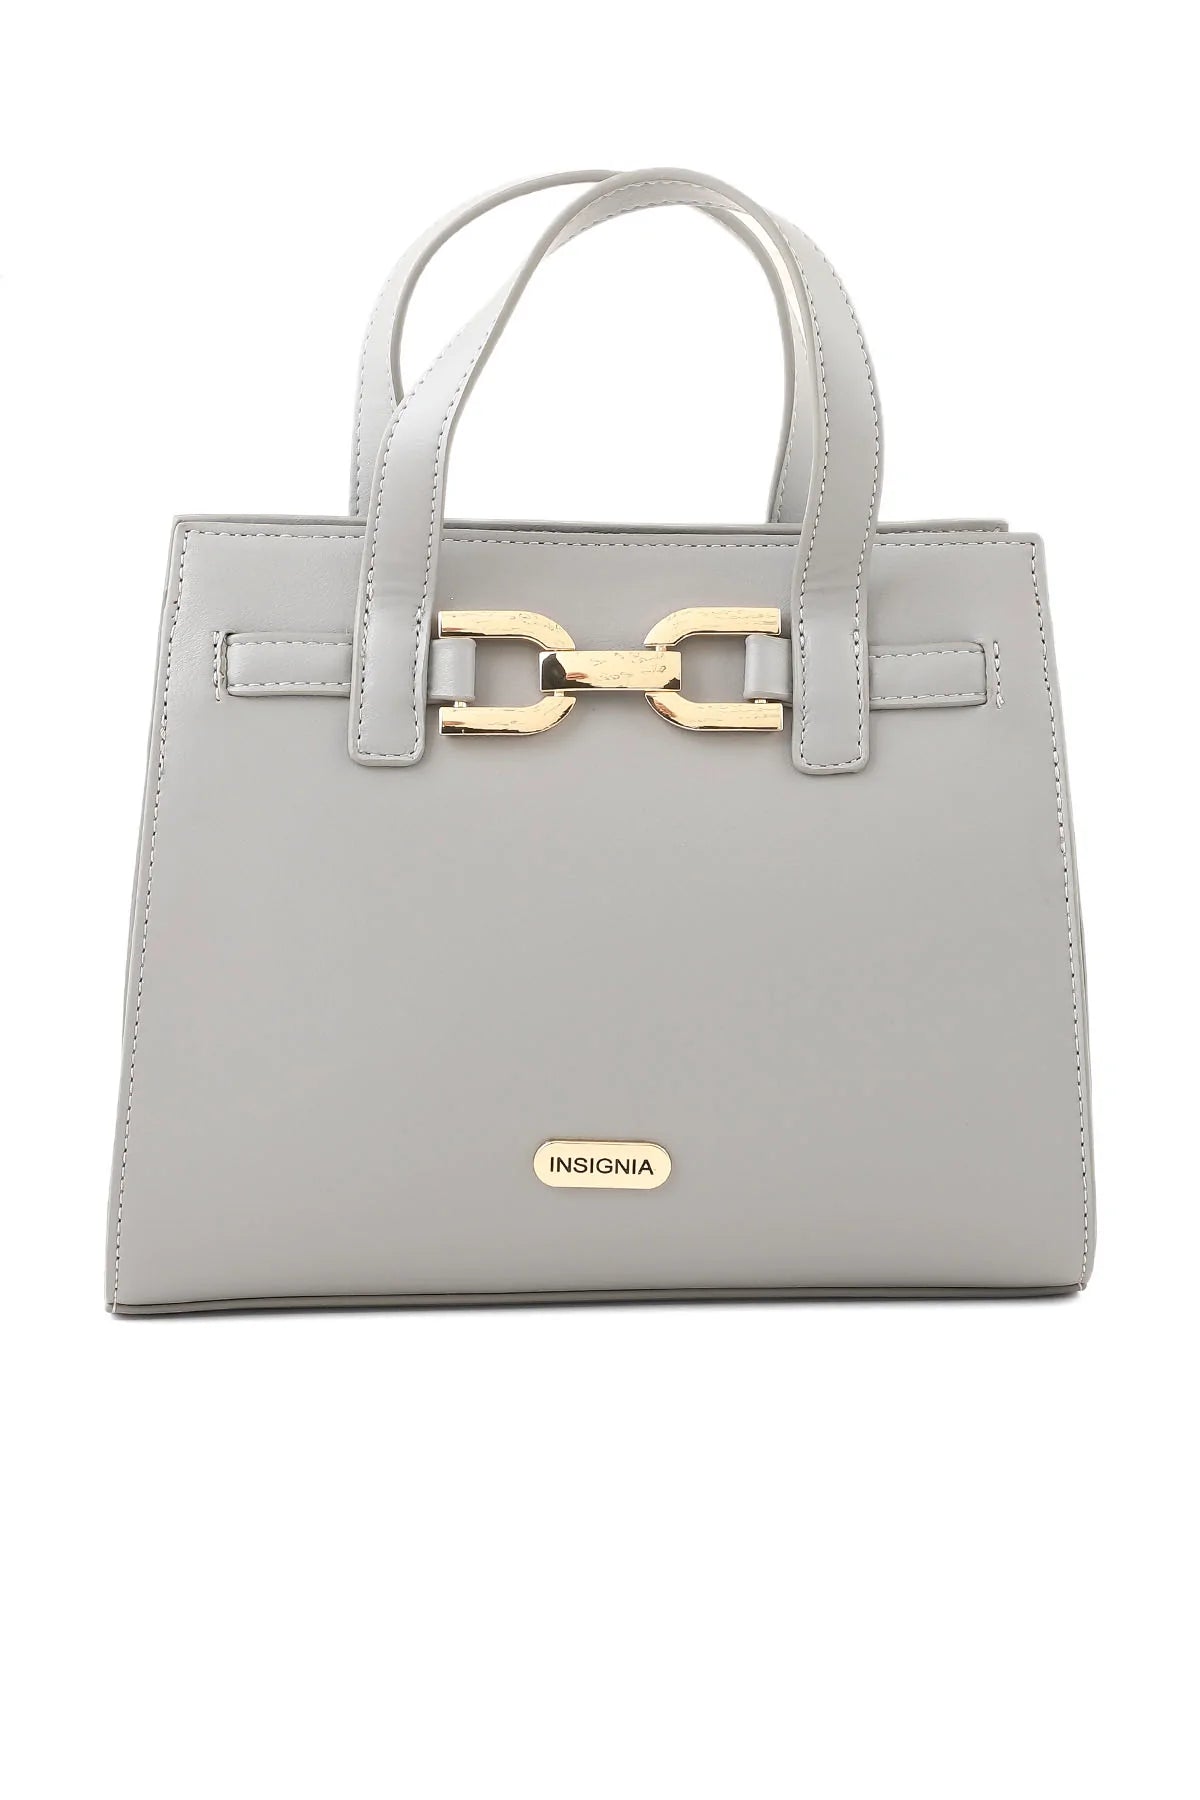 Formal Tote Hand Bags B15016-Grey